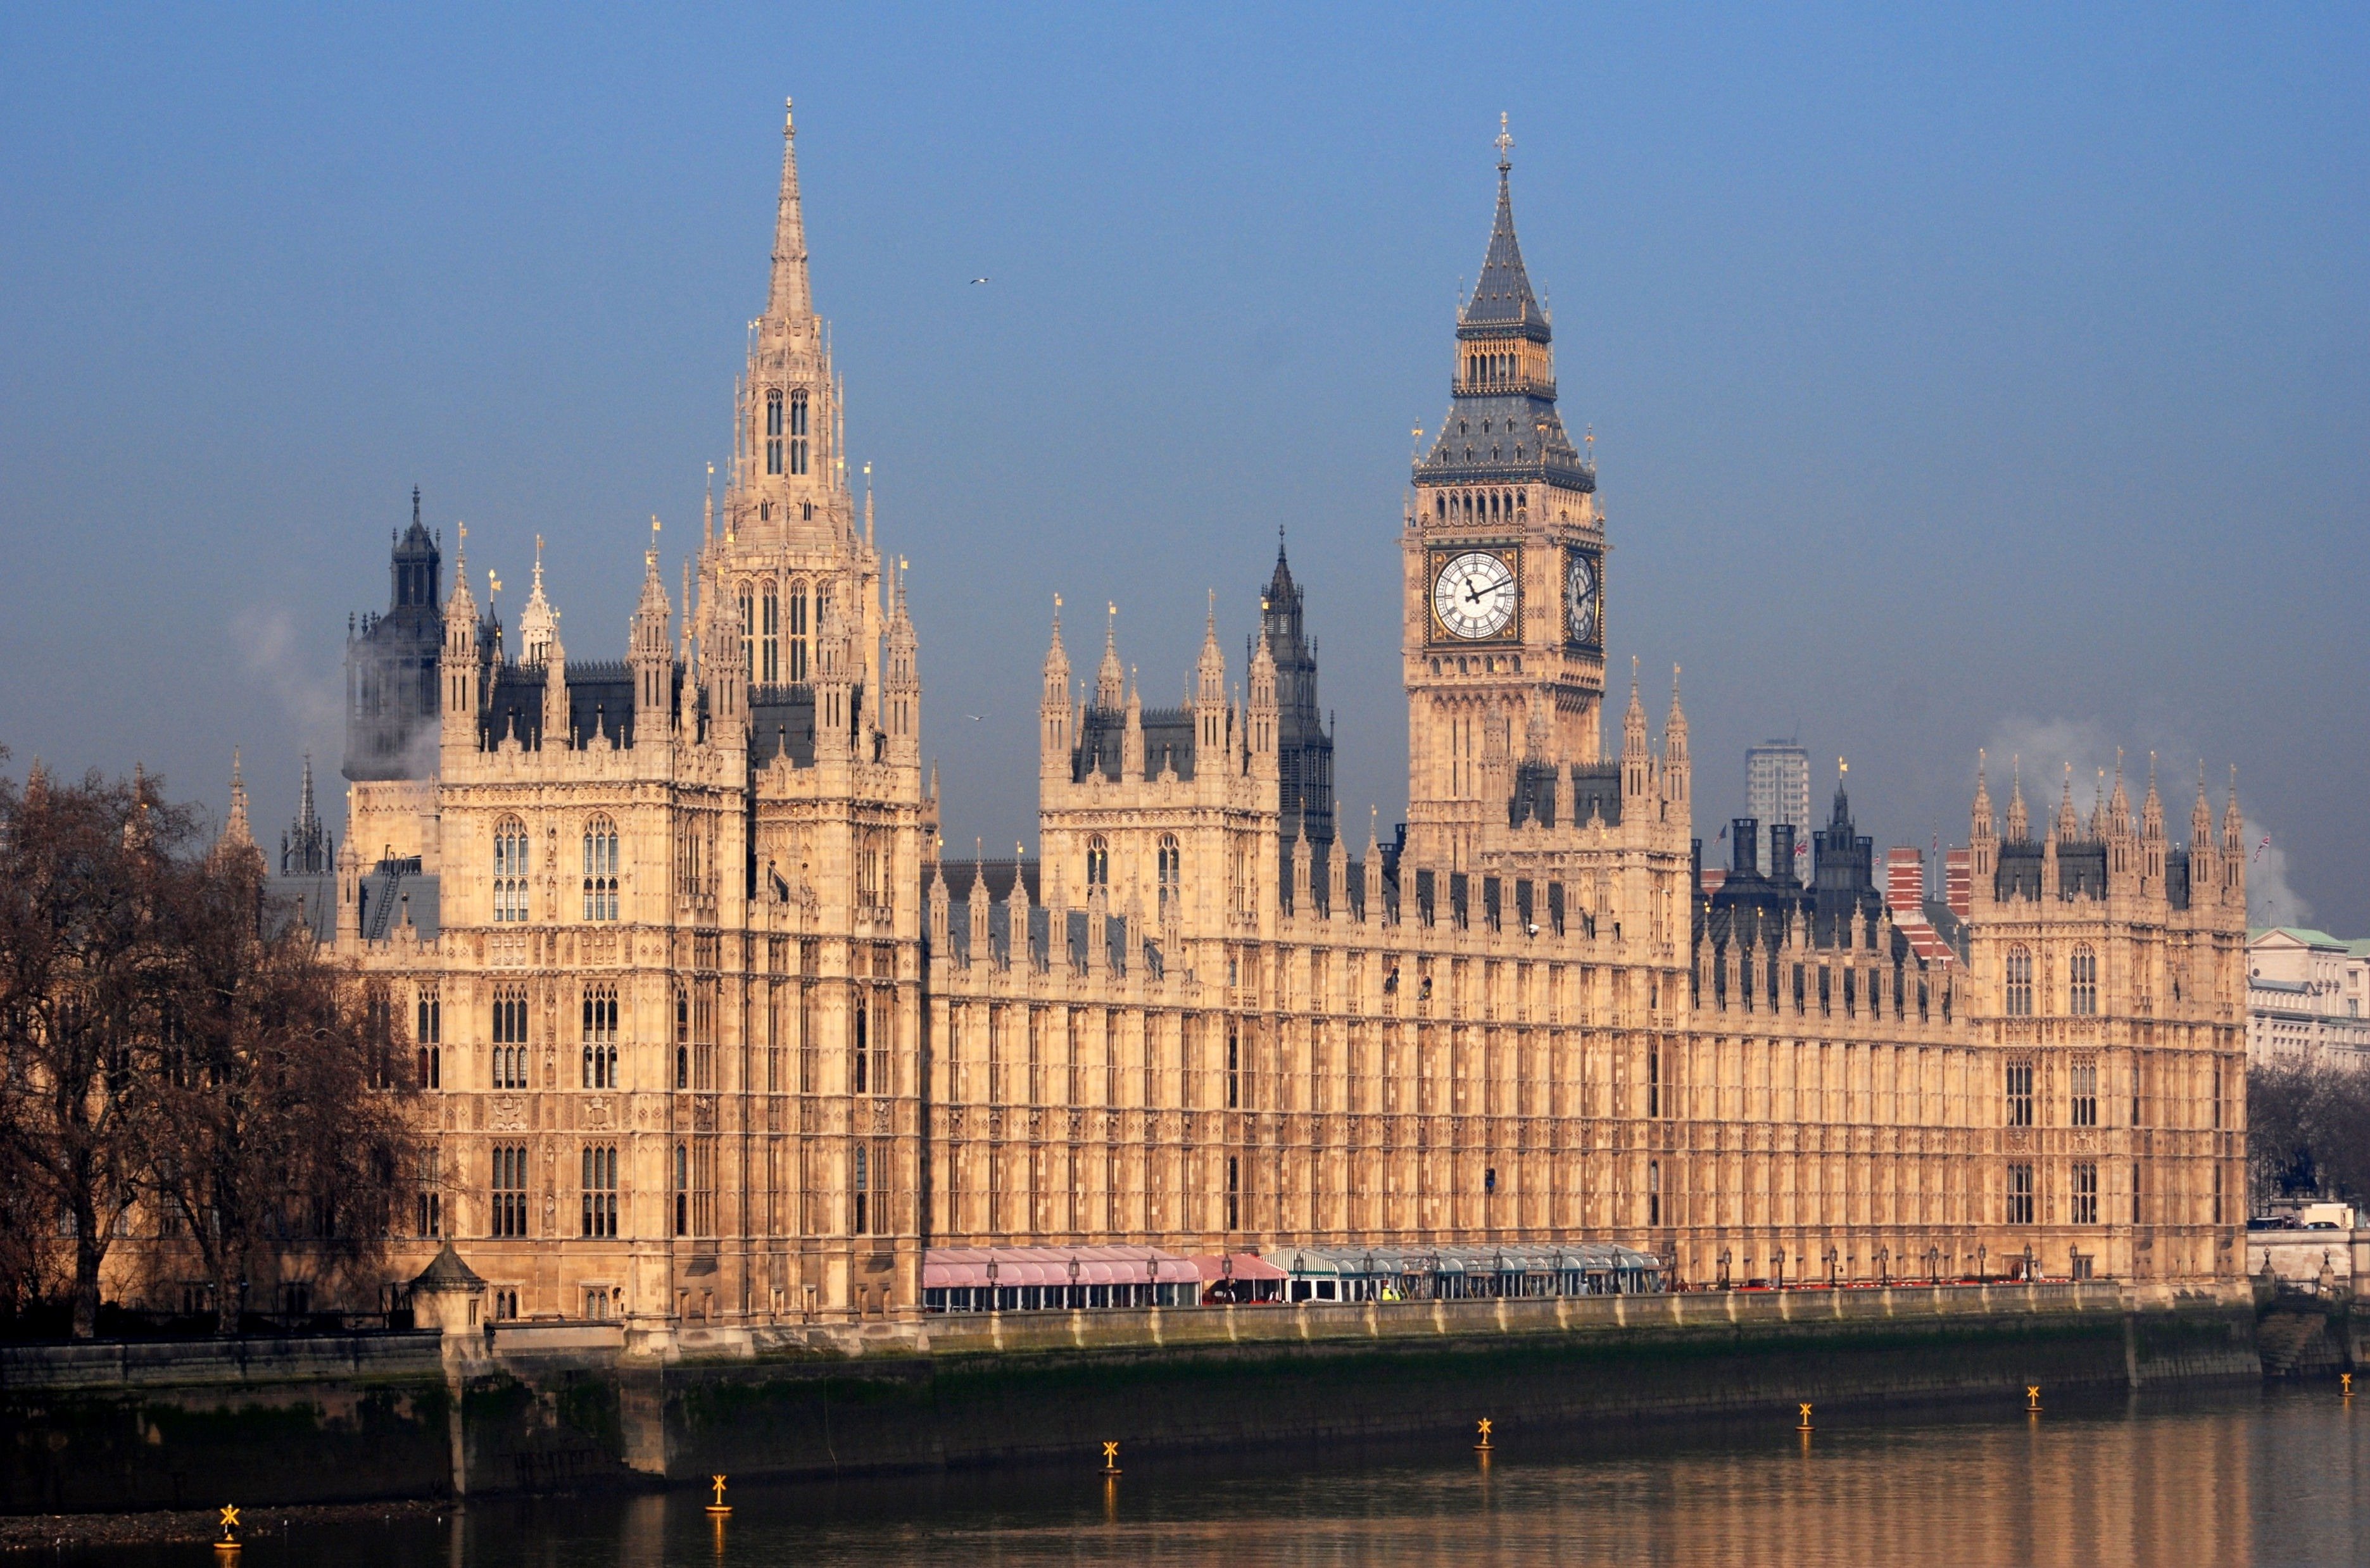 Первая в мире в лондоне. Вестминстерский дворец (Palace of Westminster).. Houses of Parliament в Лондоне. Великобритания Вестминстерский дворец Биг Бэн. Здание парламента - Вестминстерский дворец.